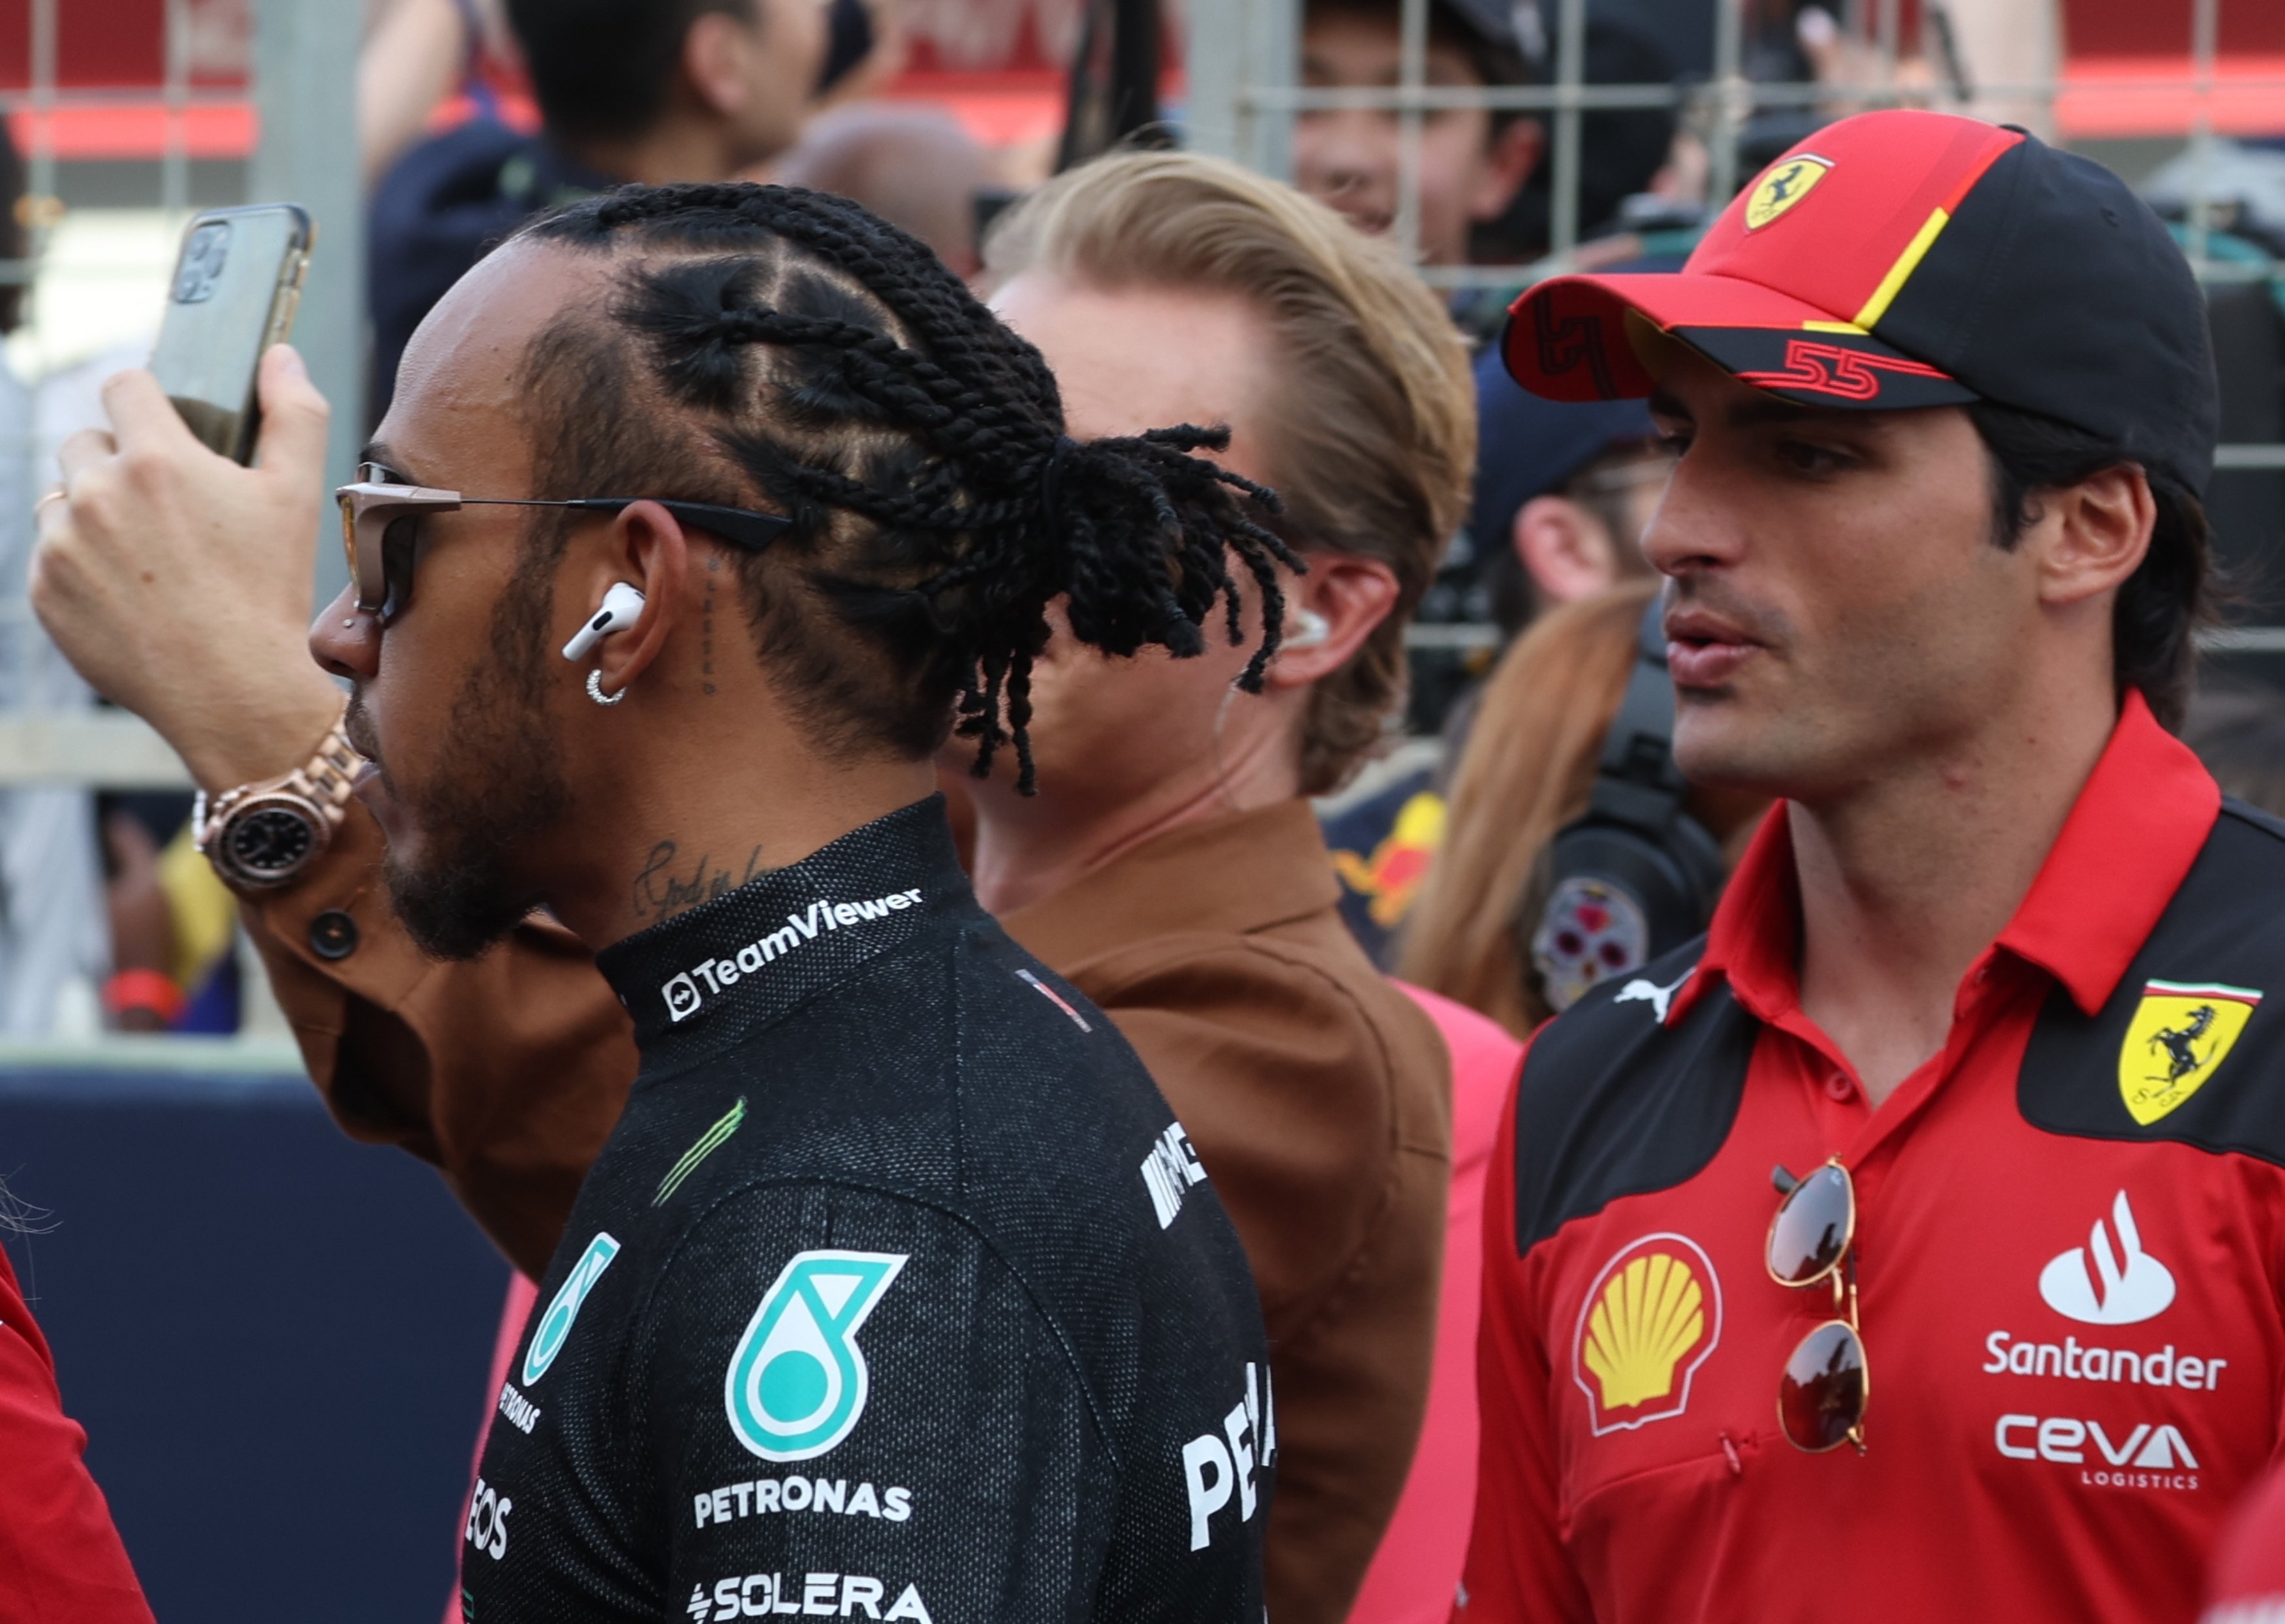 L'arribada de Lewis Hamilton a Ferrari mou a Carlos Sainz a un gran inesperat, primers contactes